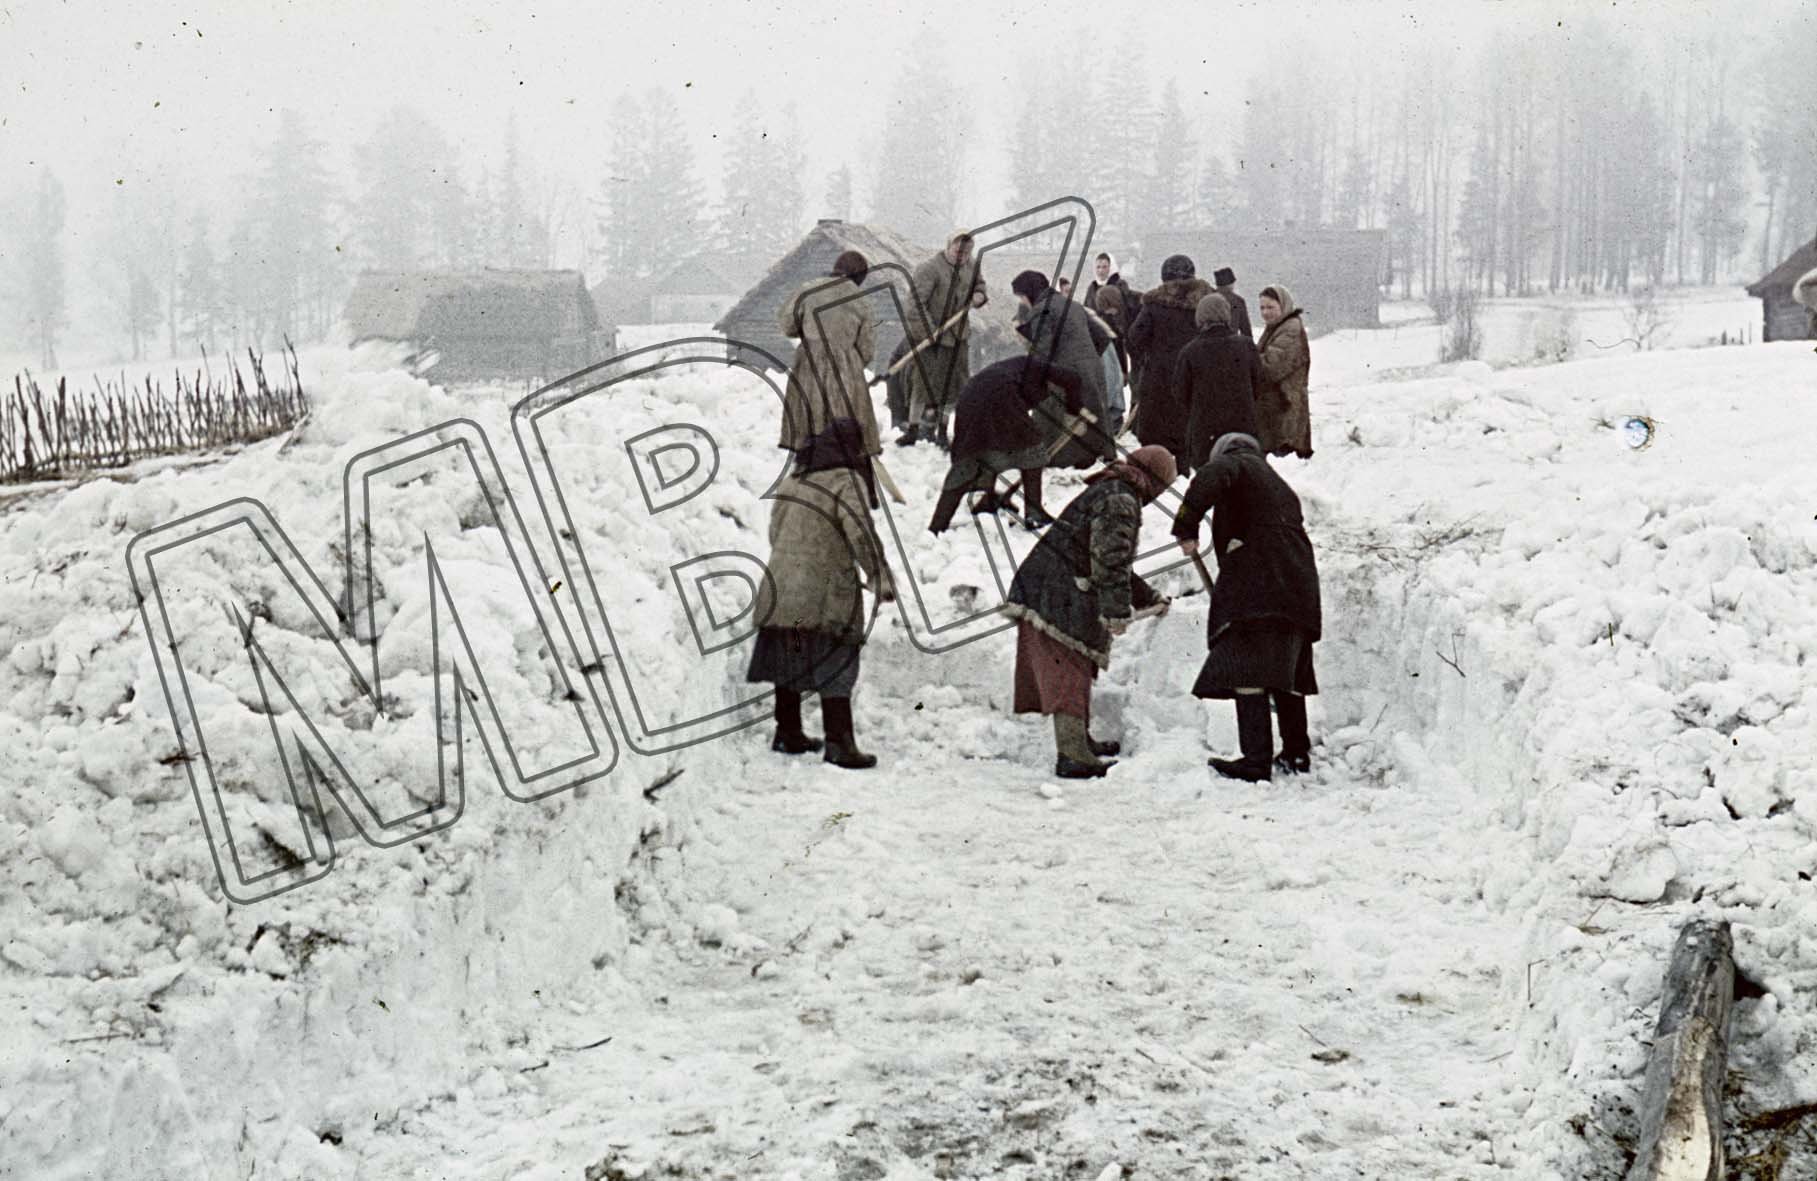 Fotografie: Arbeitseinsatz sowjetischer Frauen bei der Schneeräumung, Terenteevo, März 1942 (Museum Berlin-Karlshorst RR-P)